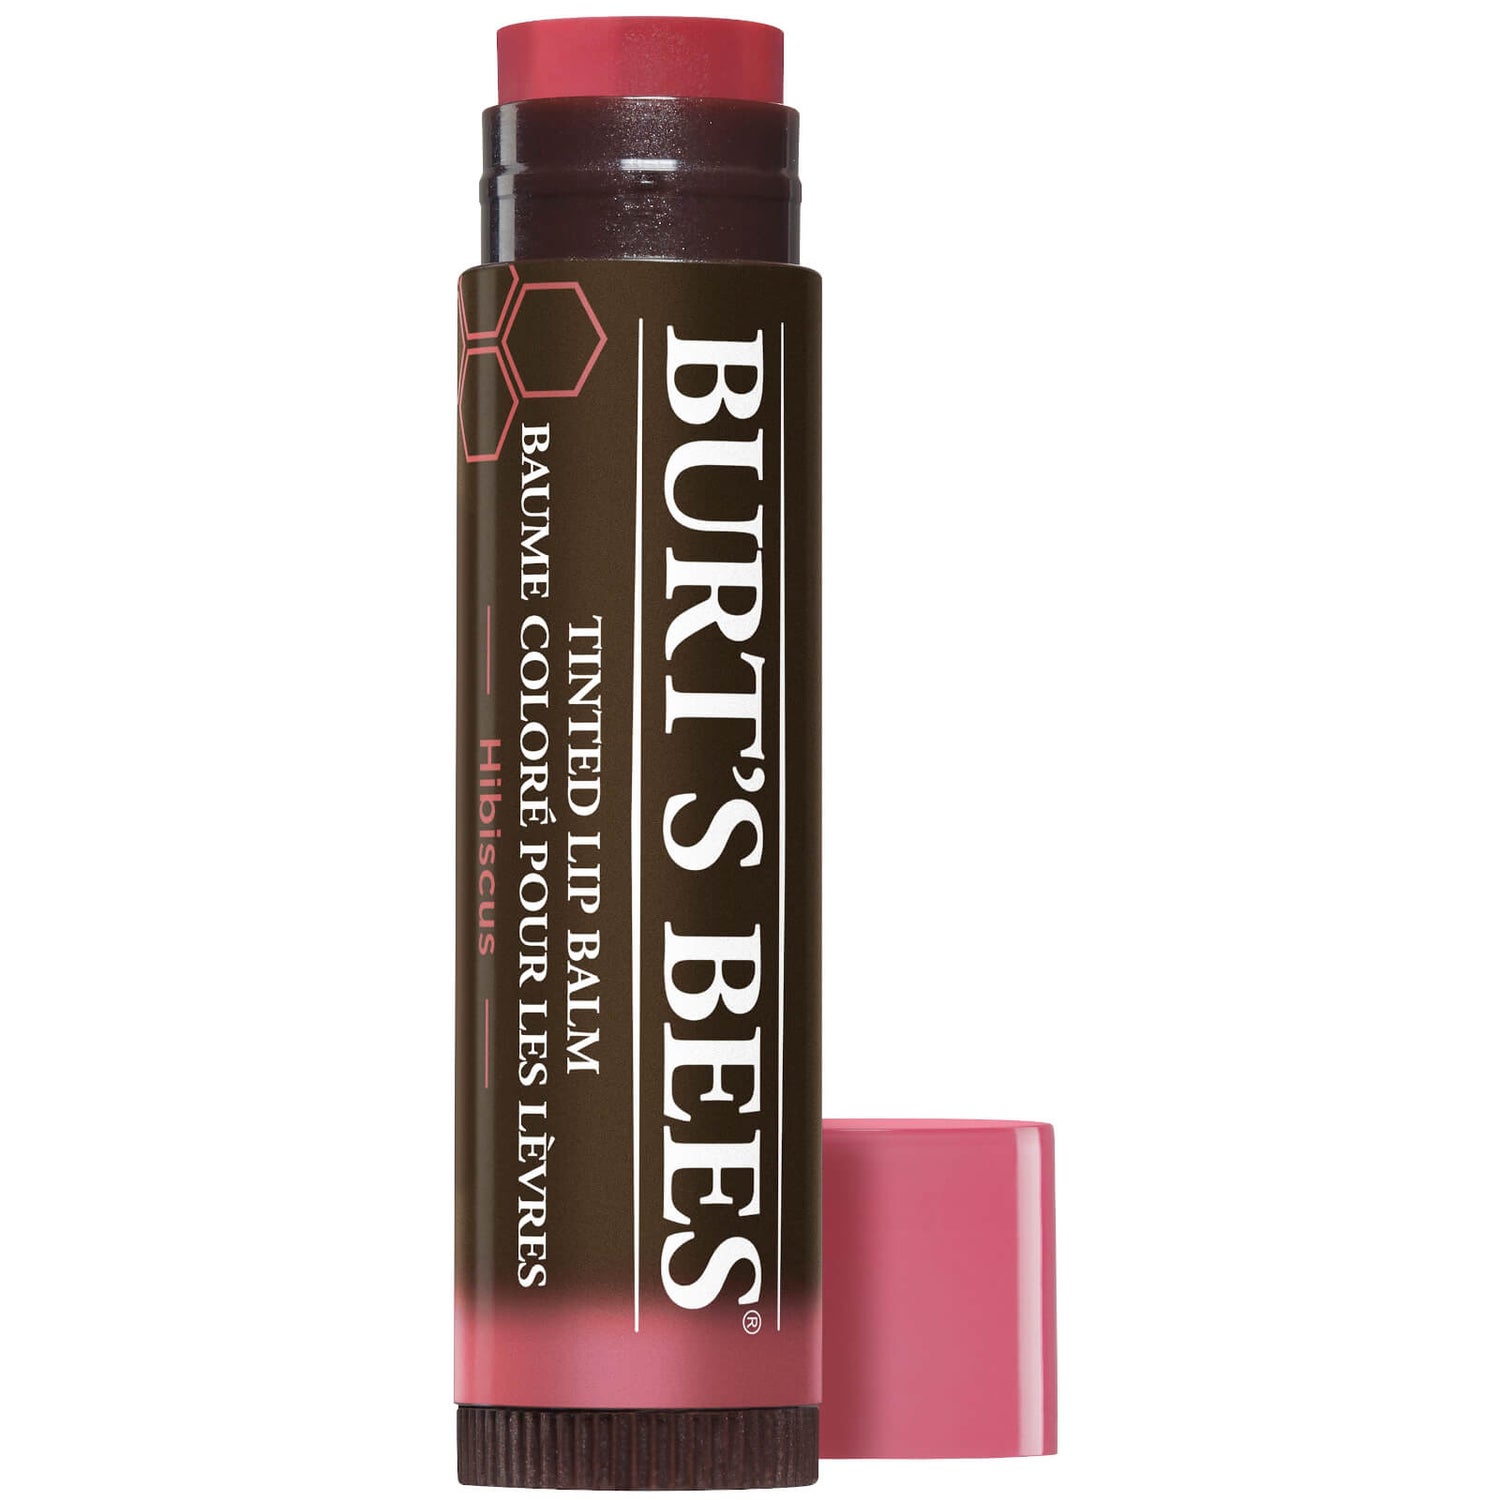 Burt's Bees Tinted Lip Balm (Various Shades)